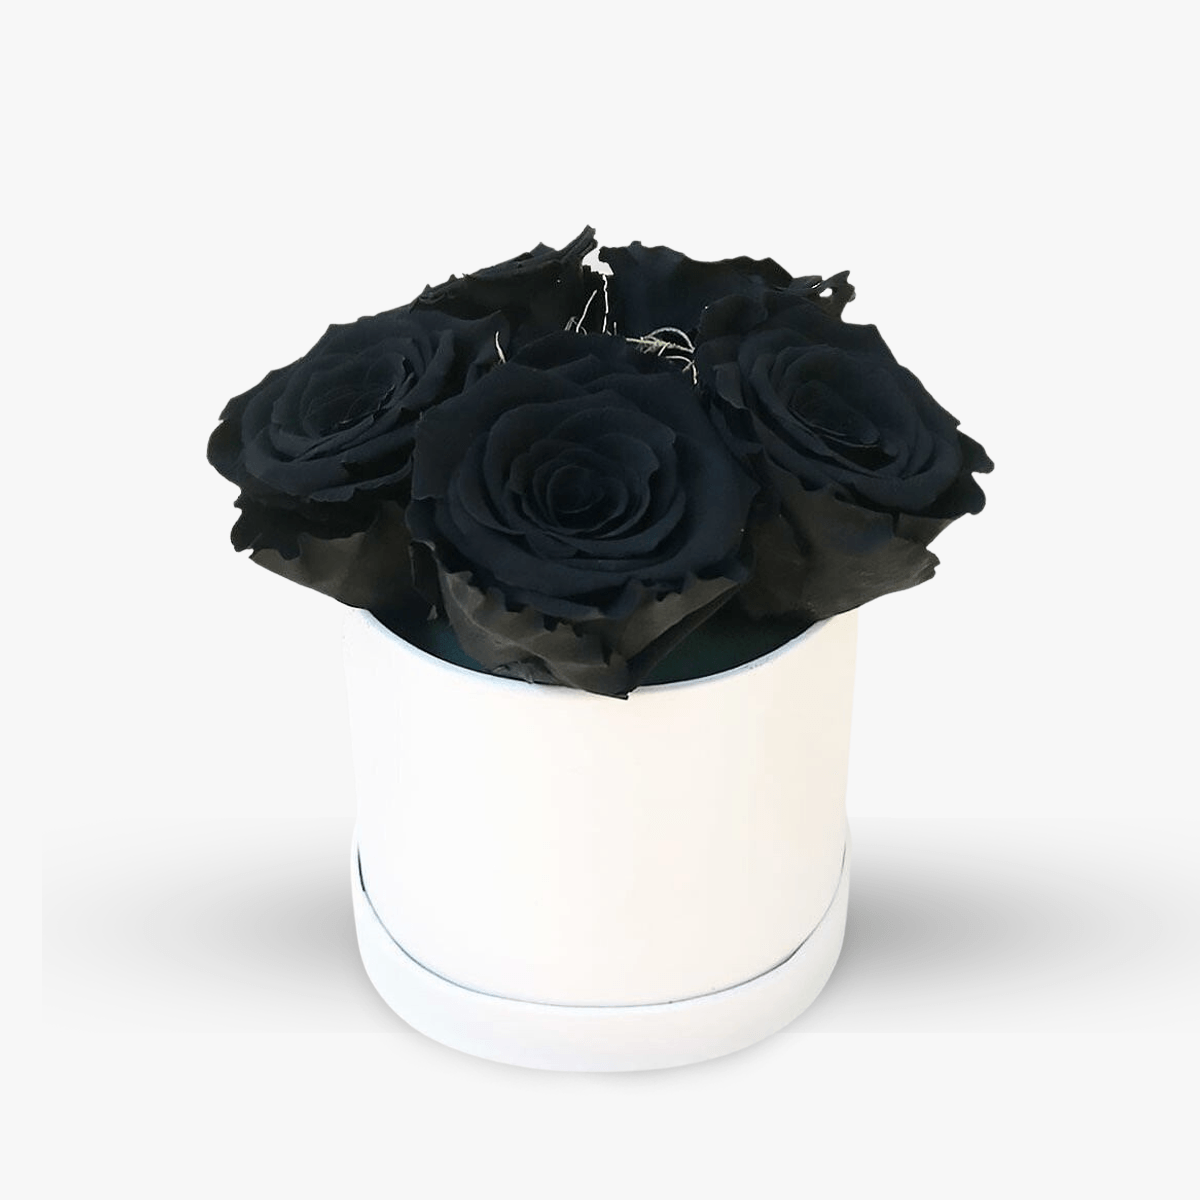 Cutie cu 5 trandafiri negri, criogenati – Standard criogenati